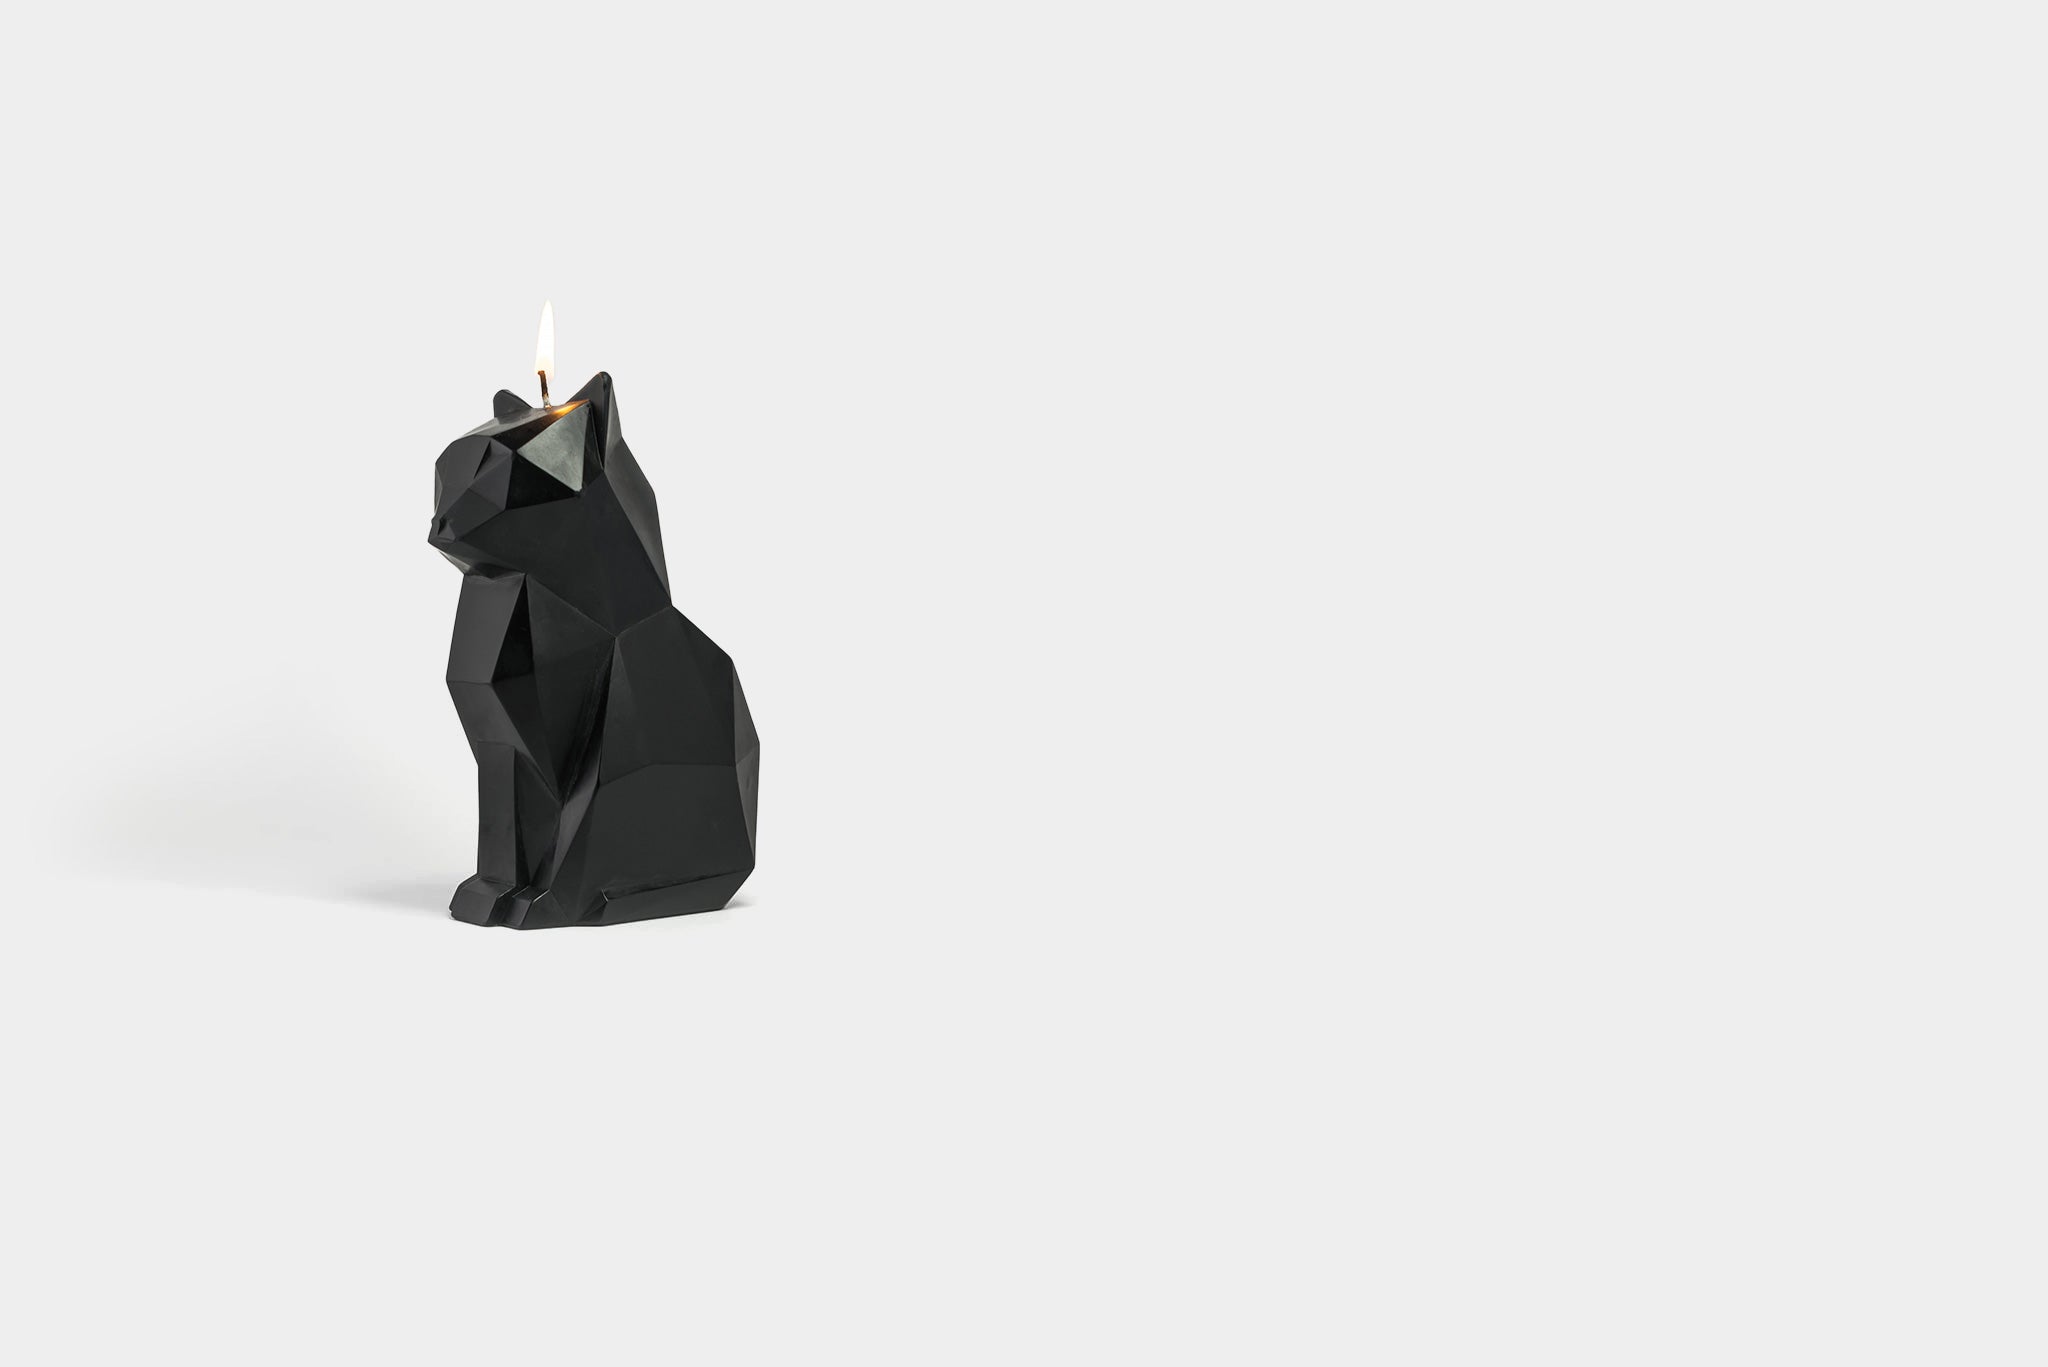 PyroPet Kisa – Bougie squelette de chat – Cadeau pour femme – Décoration de  chambre gothique – Bougies uniques en forme de chat effrayant, noir